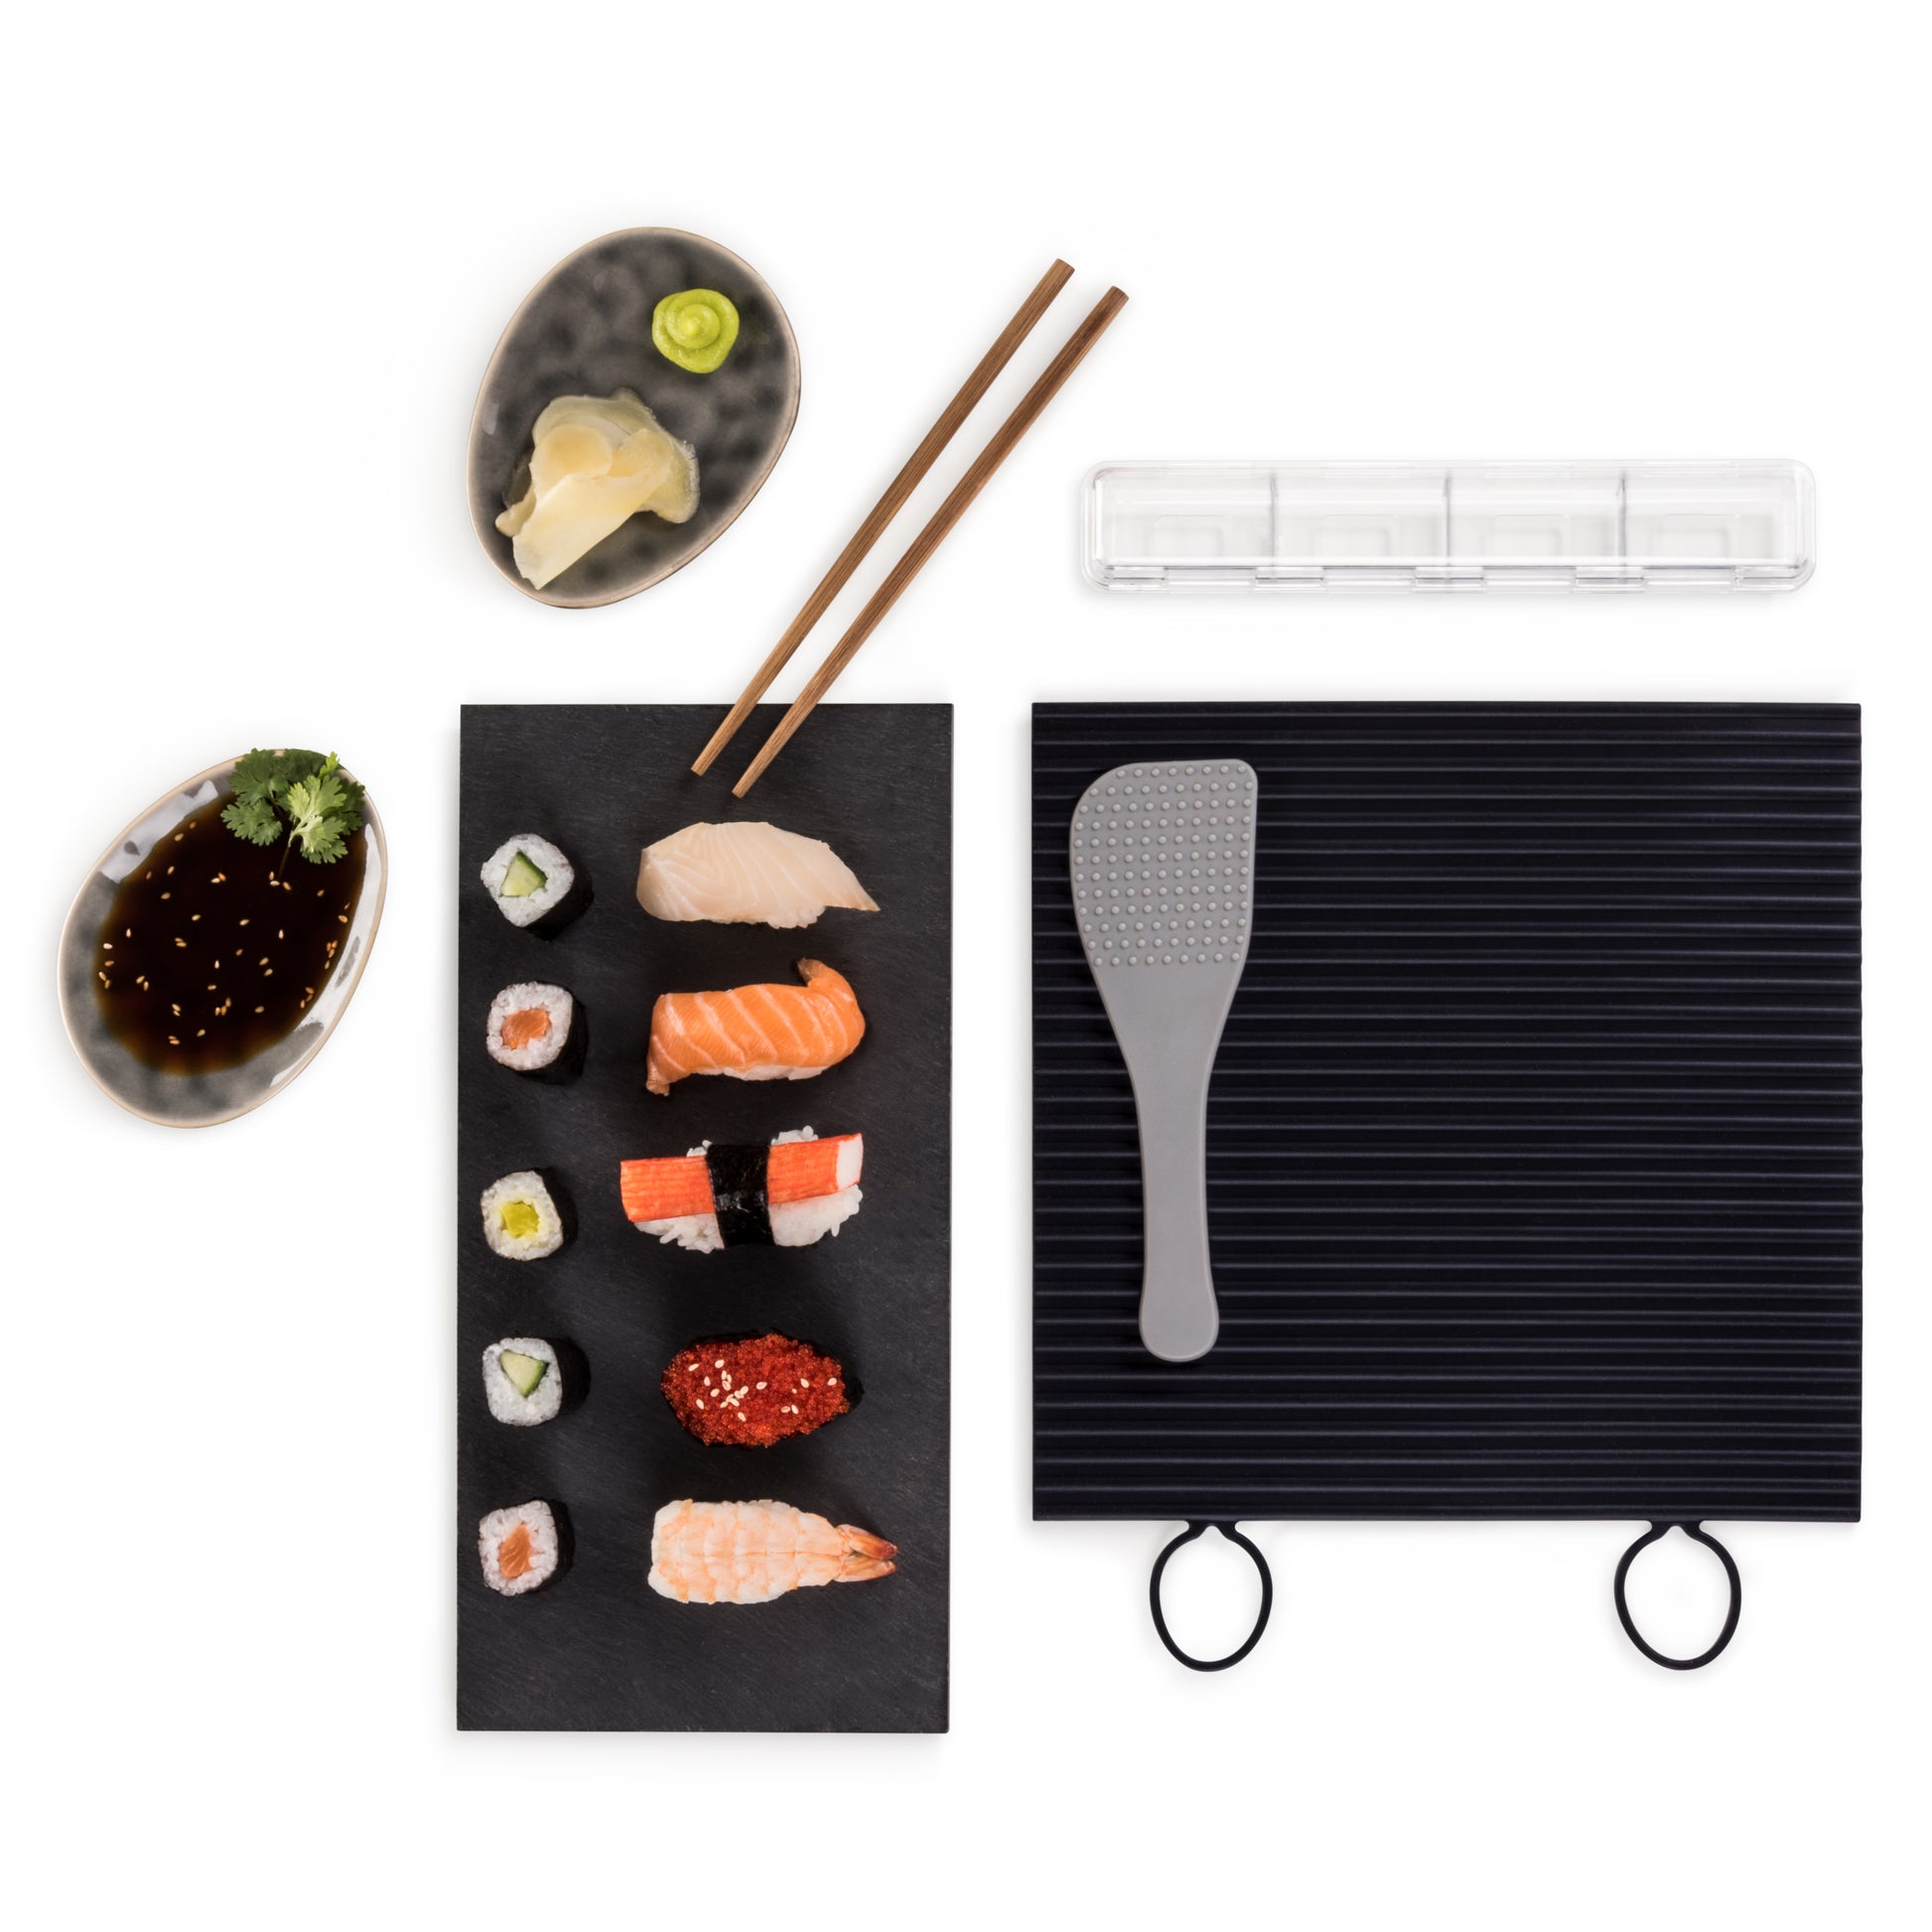 Zubereitetes Sushi auf einer schwarzen Platte mit Sojasauce Wasabi Ingwer Essstäbchen und Reislöffel.